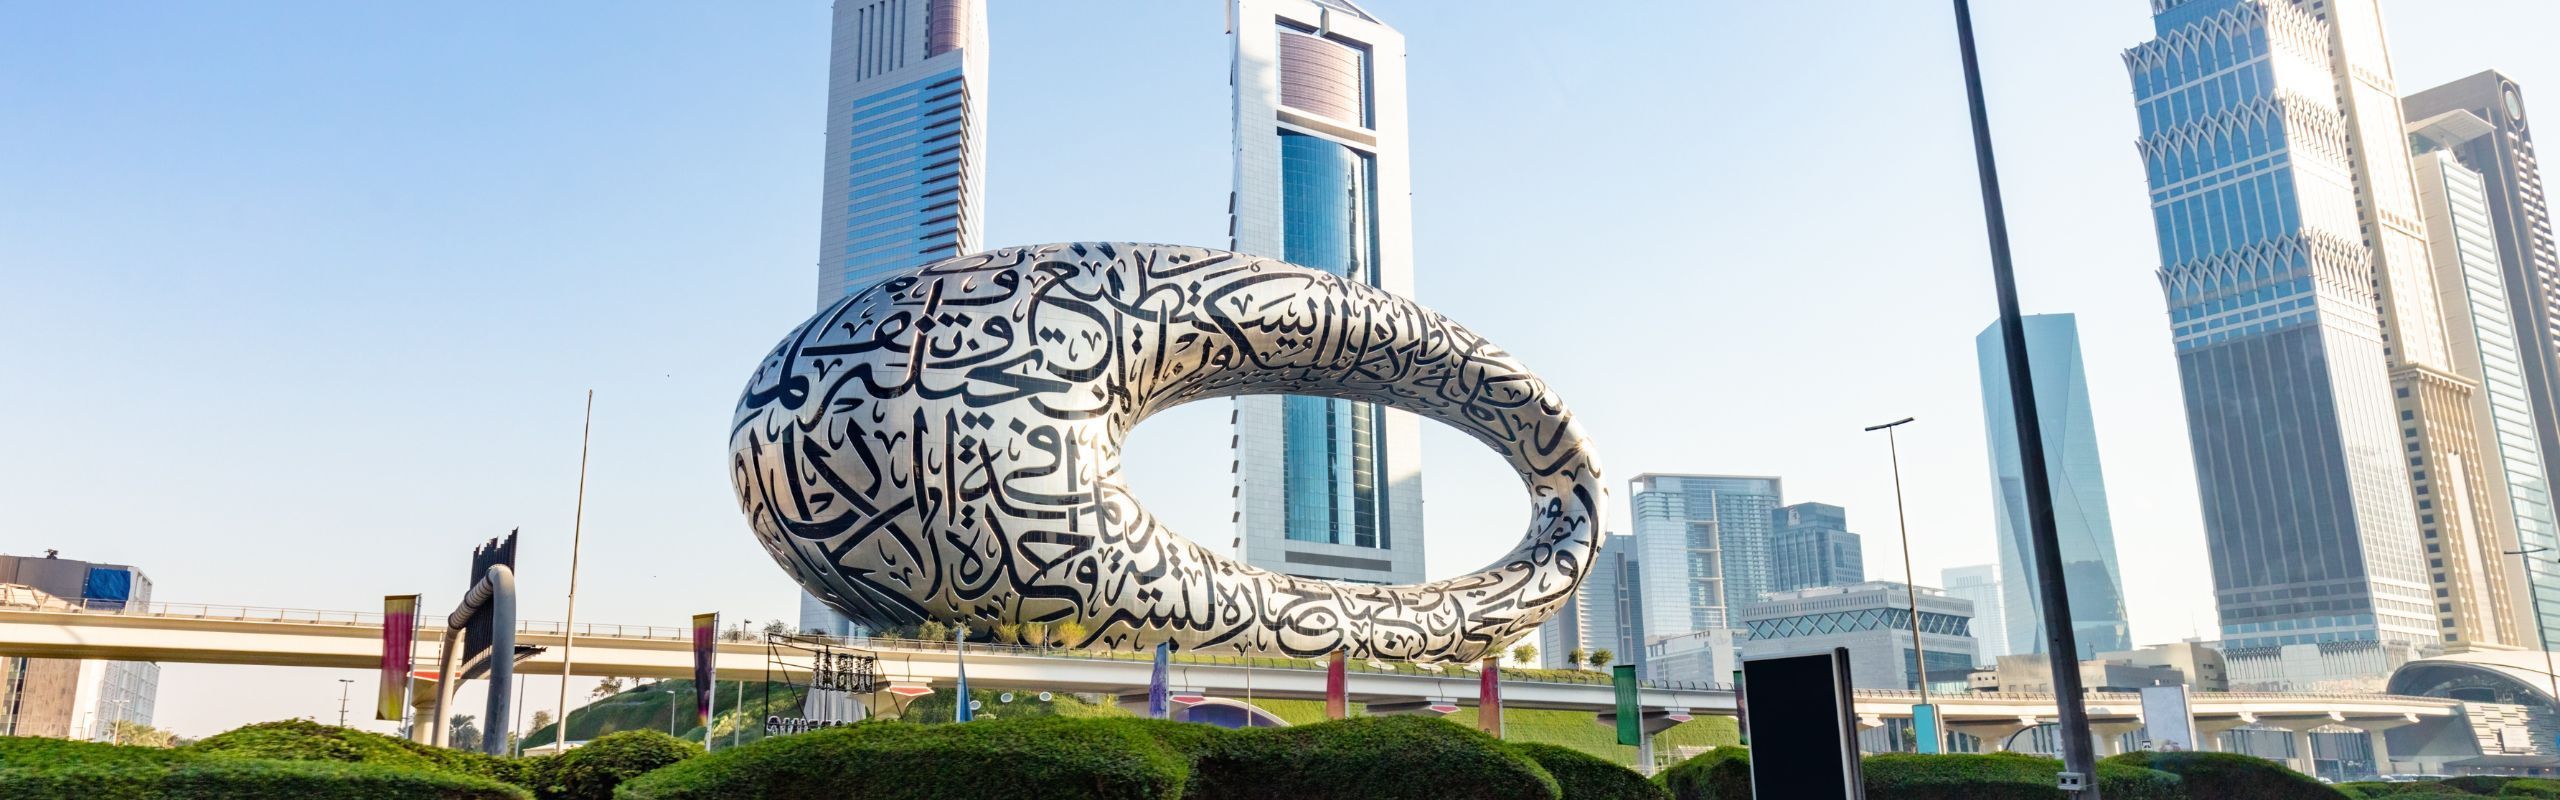 Image Museum of the Future landmark in Dubai